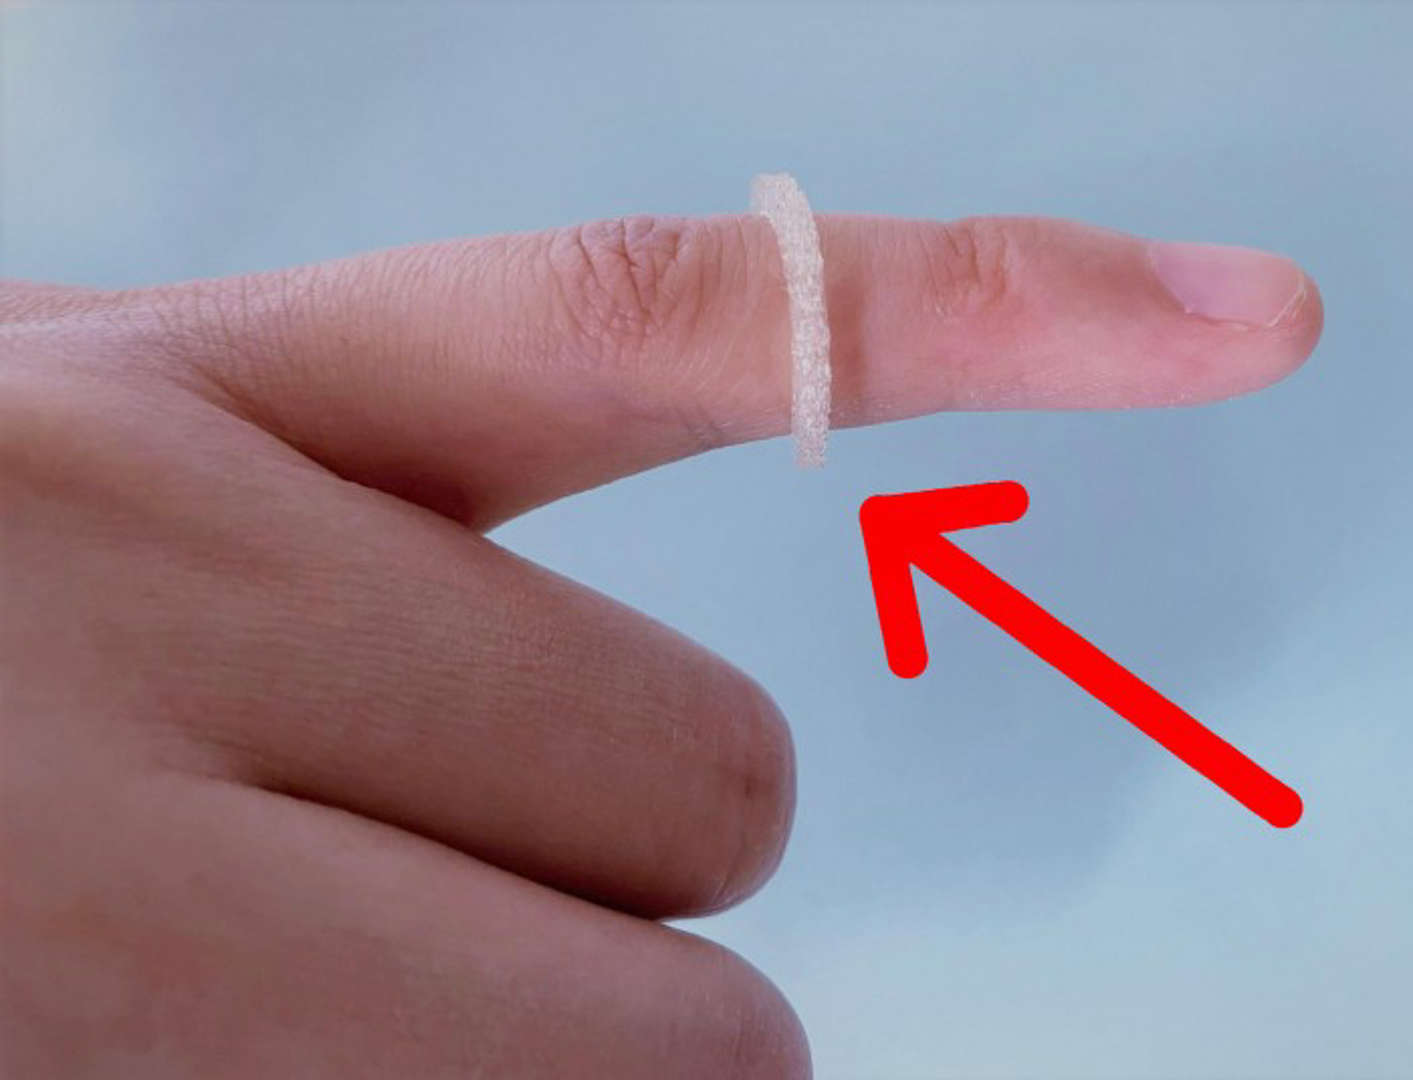 马丁路德大学哈雷维滕贝格分校科学家发明一种新型的形状如戒指的驱虫装置